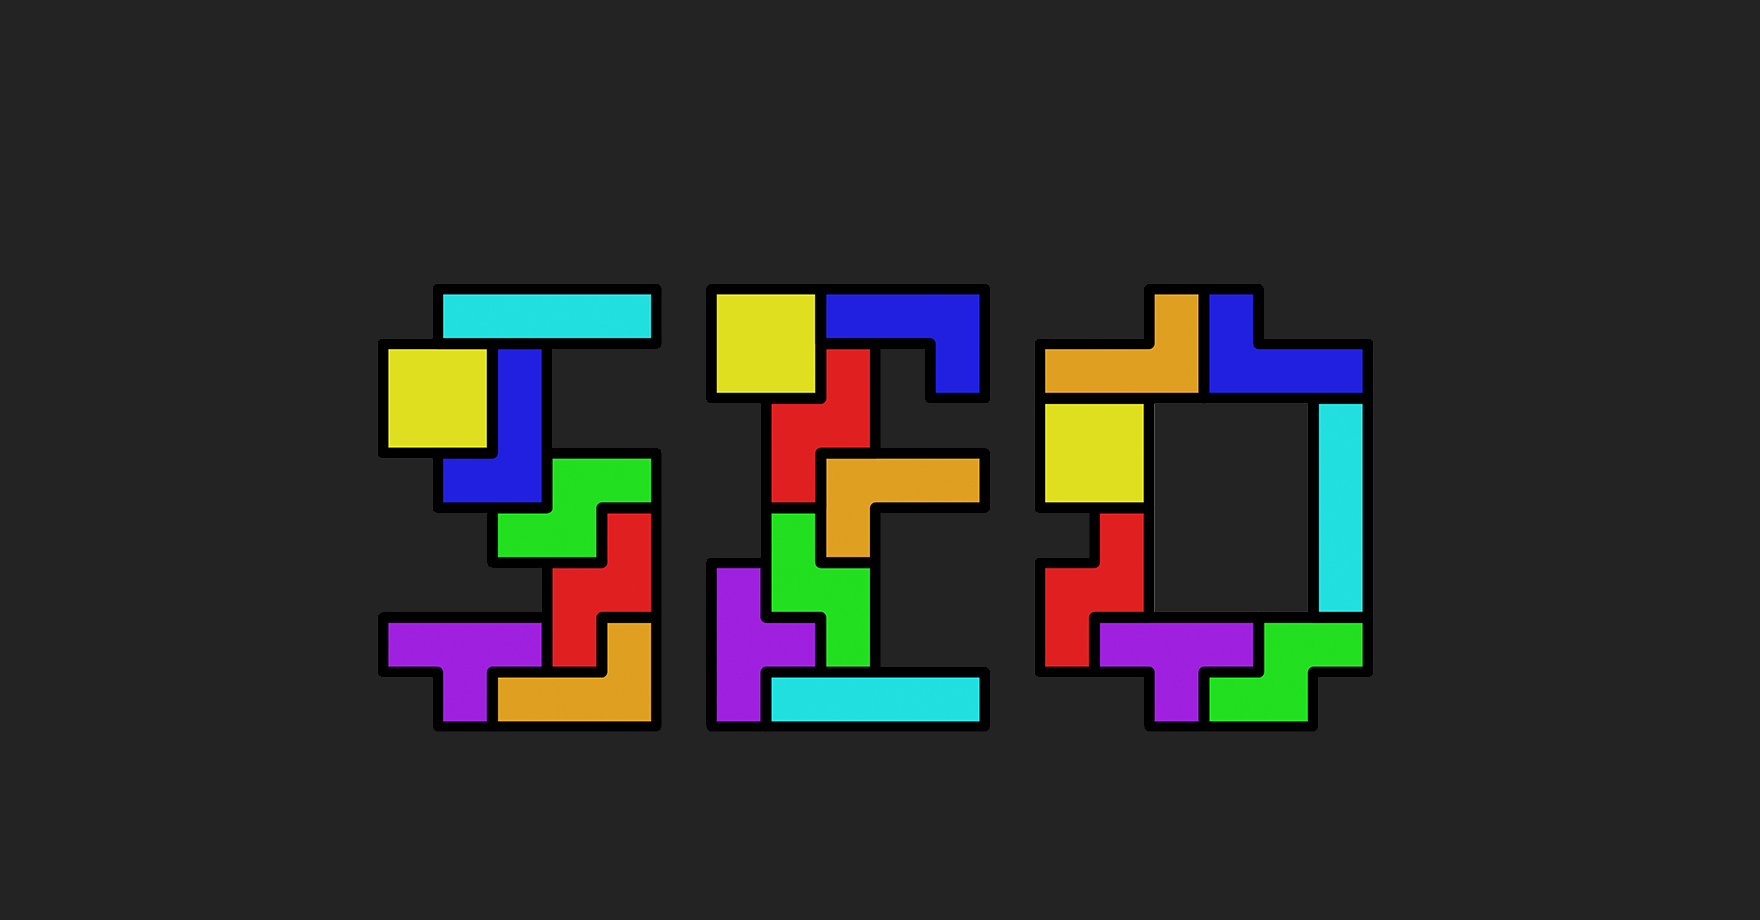 SEO ve Tetris oyunu benzerlikleri